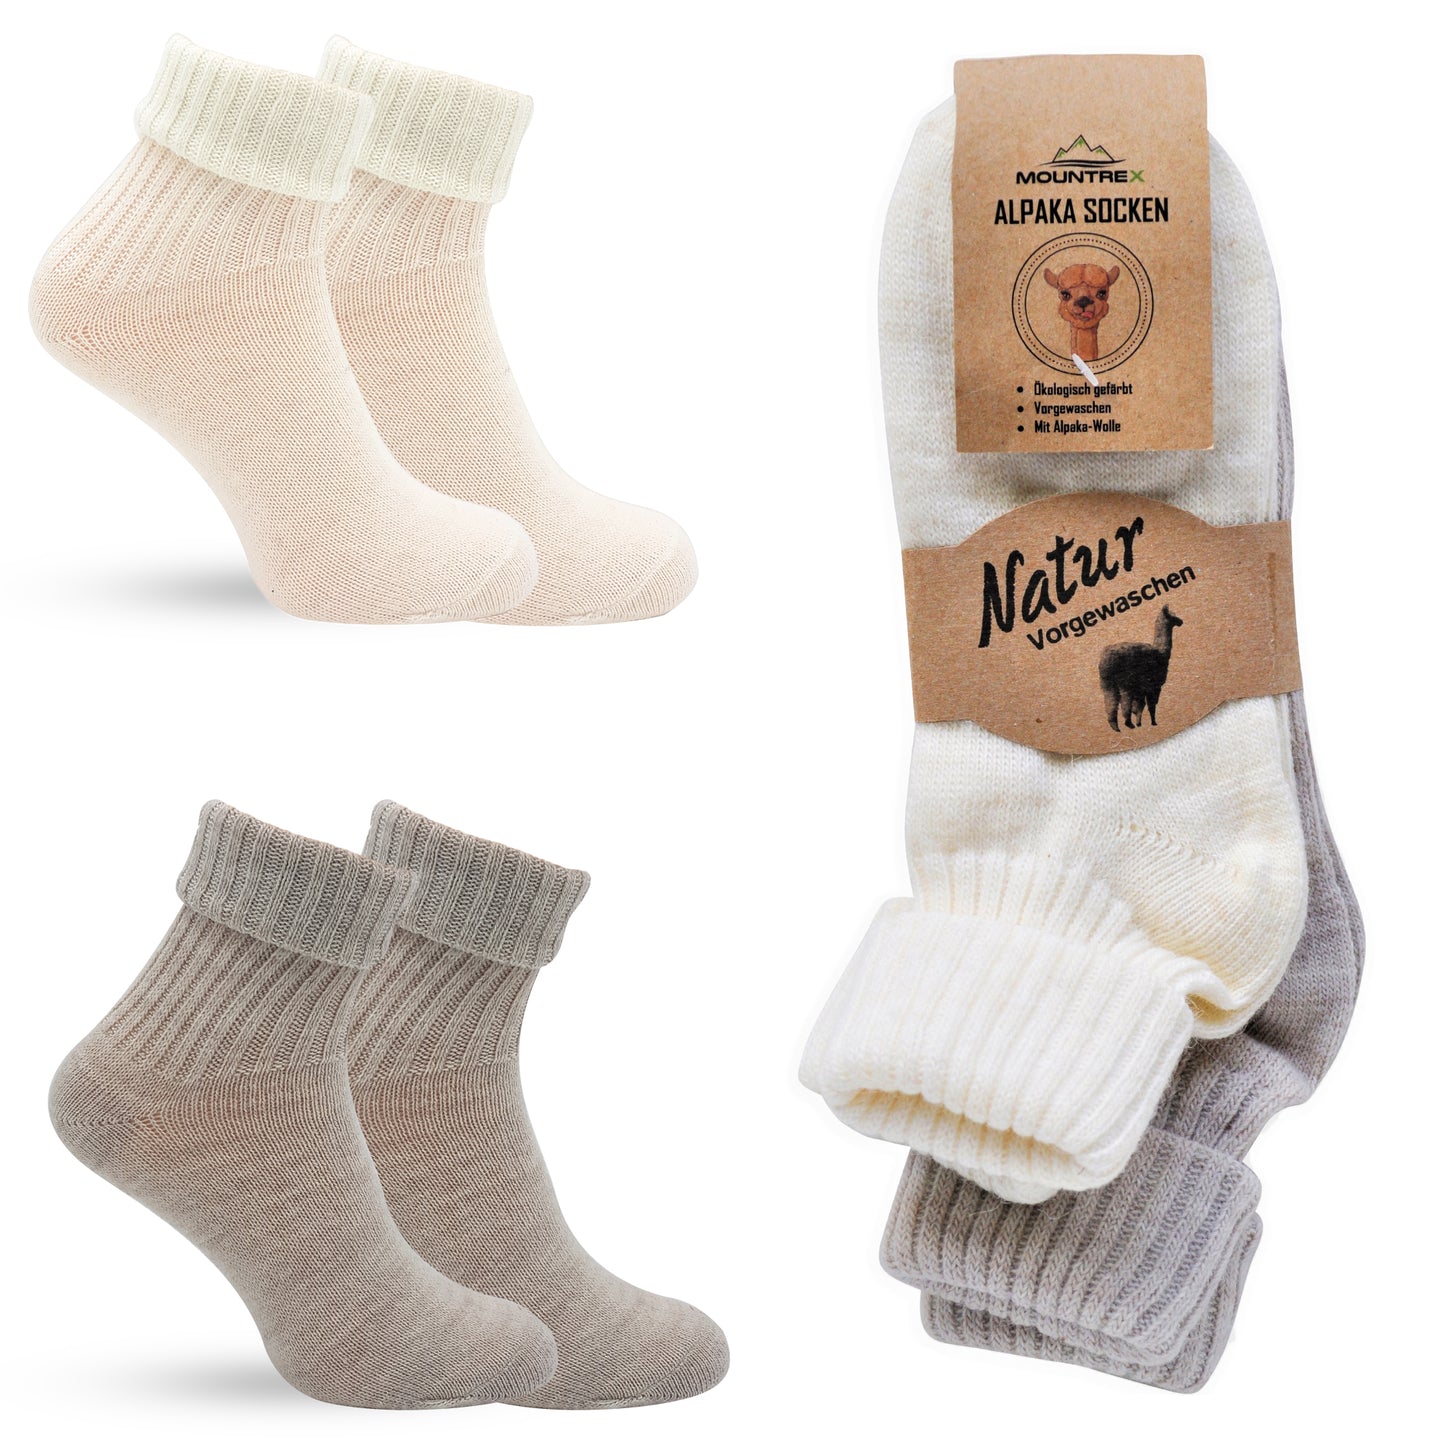 Alpaka Socken, Wollsocken (2 Paar) - Dünn, mit Umschlag (Ecru/Beige)